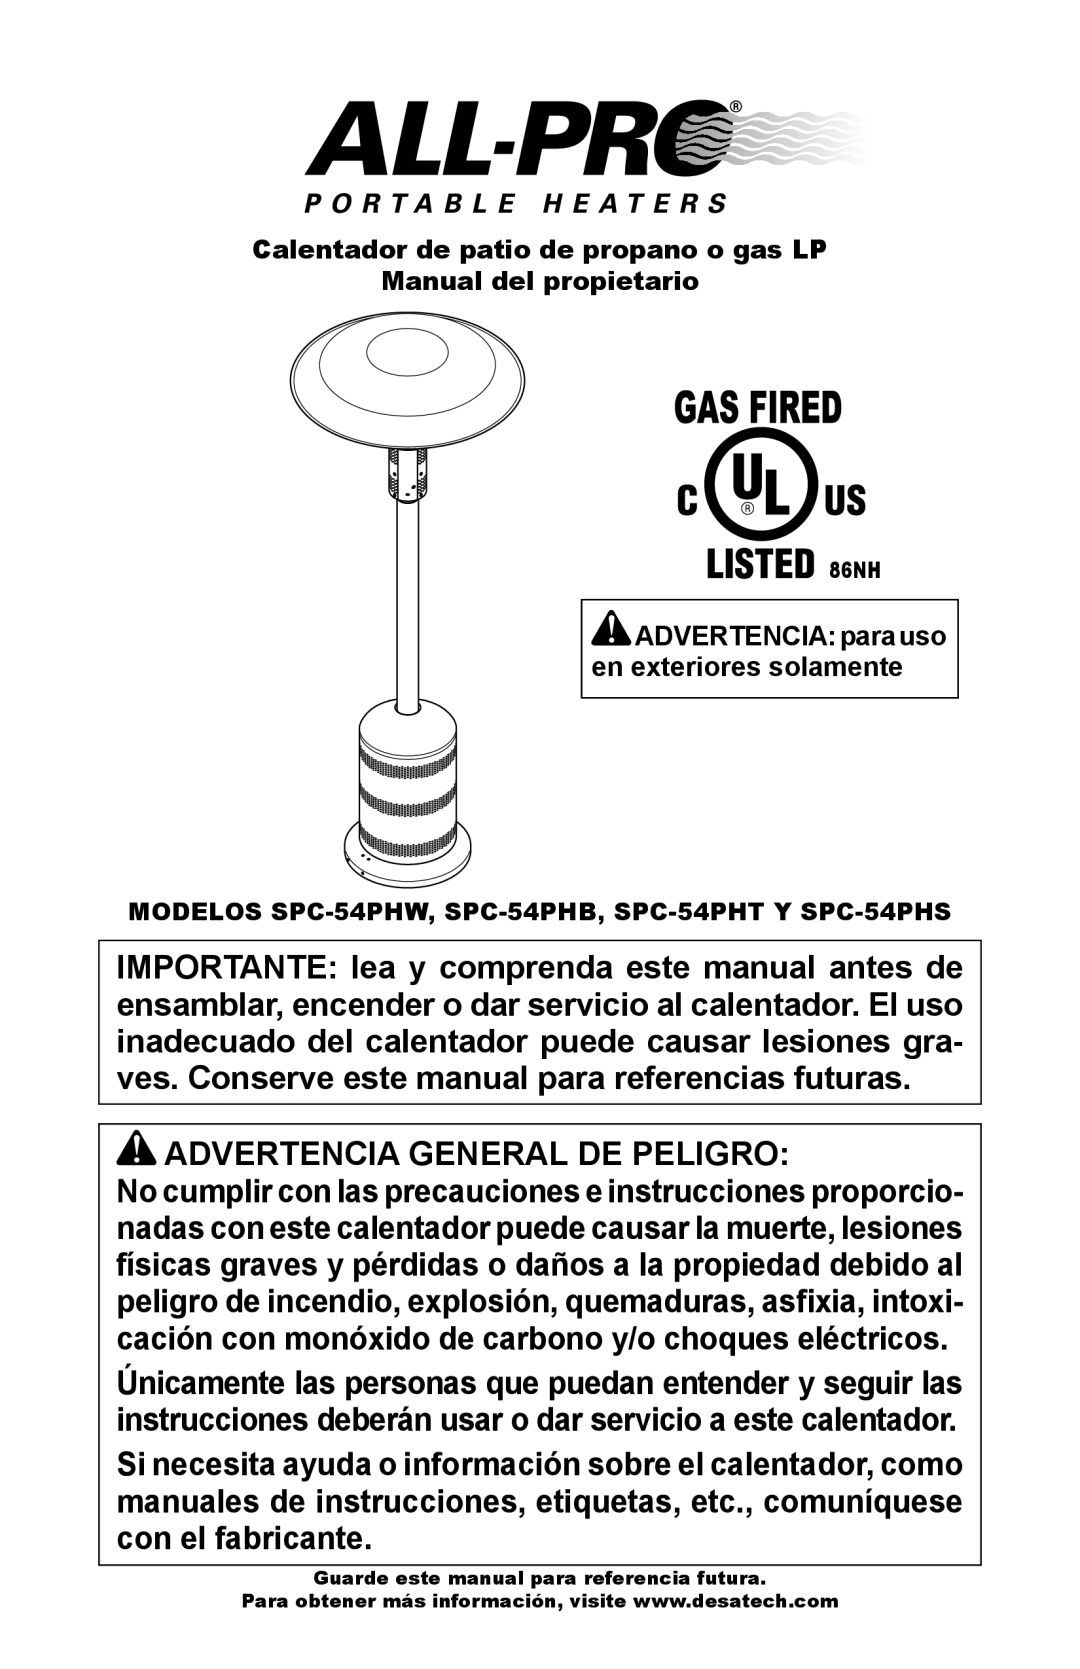 Desa SPC-54PHT, SPC-54PHS Advertencia General De Peligro, Calentador de patio de propano o gas LP, Manual del propietario 